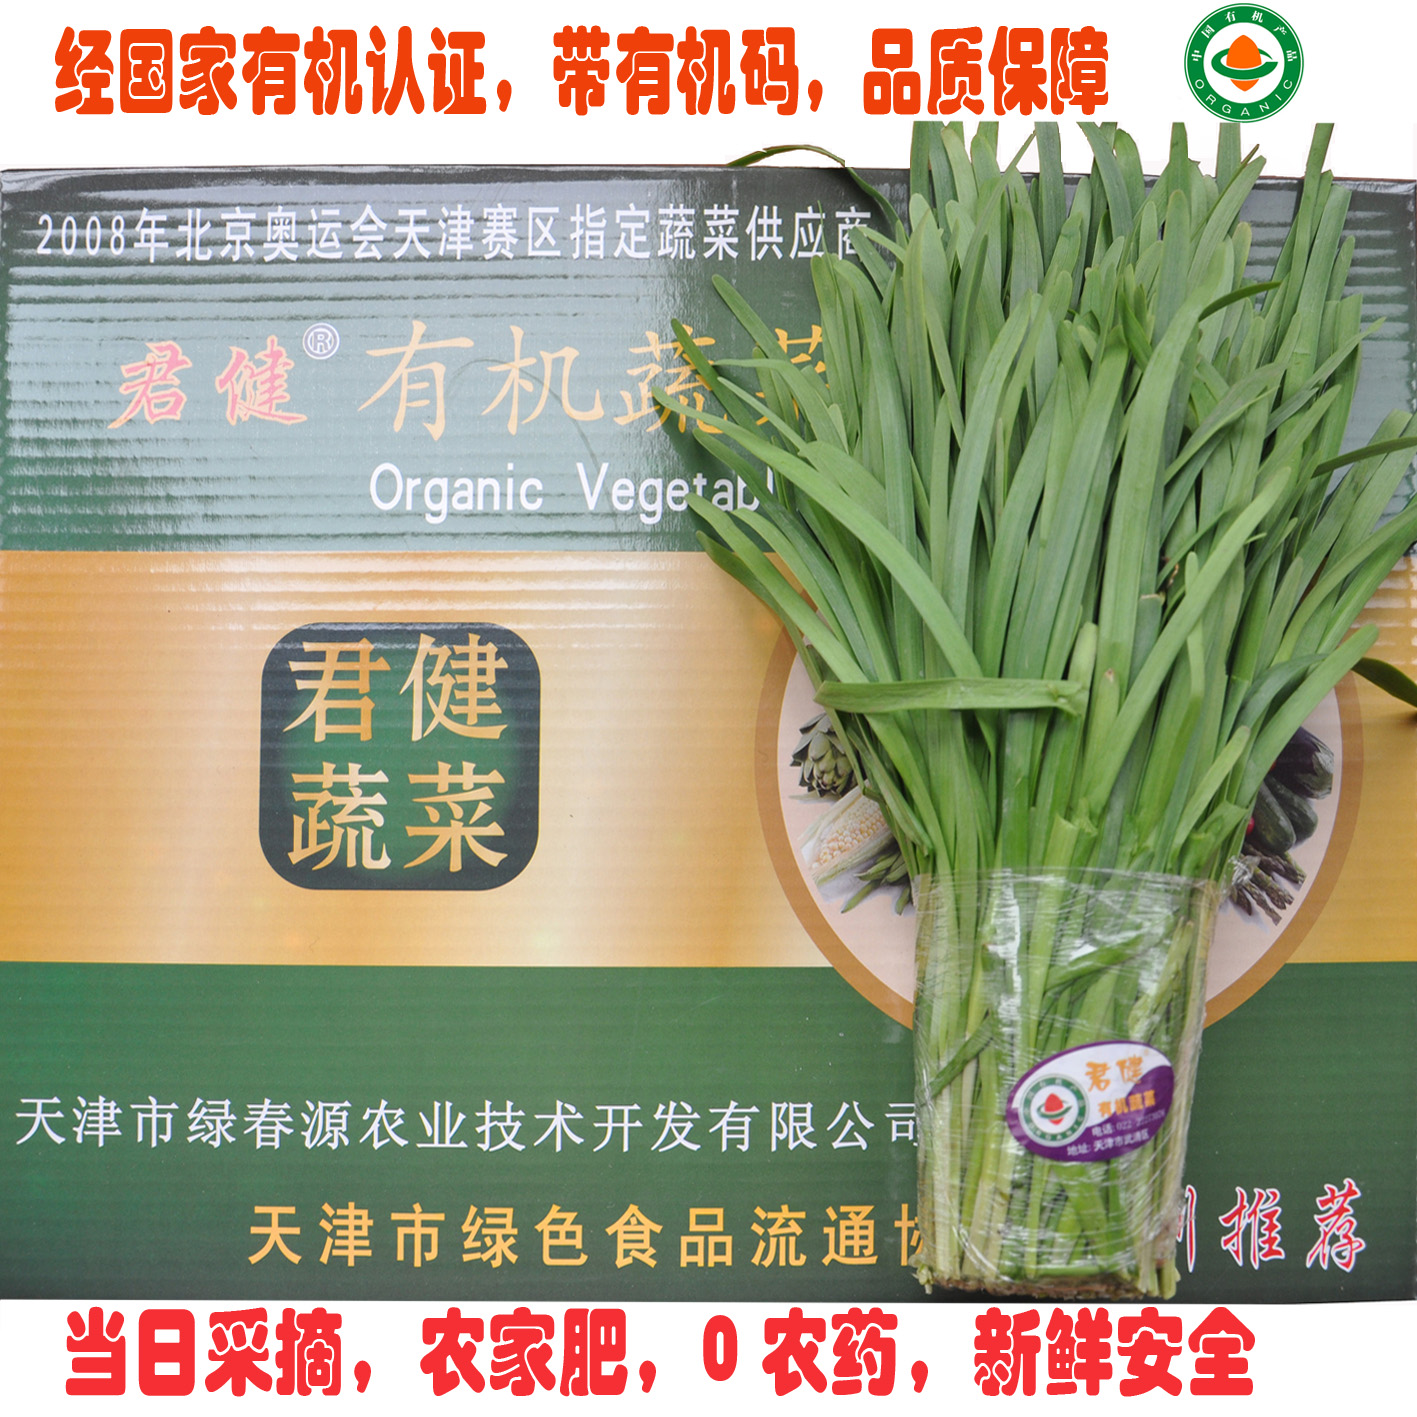 生鲜蔬菜 有机食品 韭菜 有机蔬菜天津 同城配送 有机肥无农药